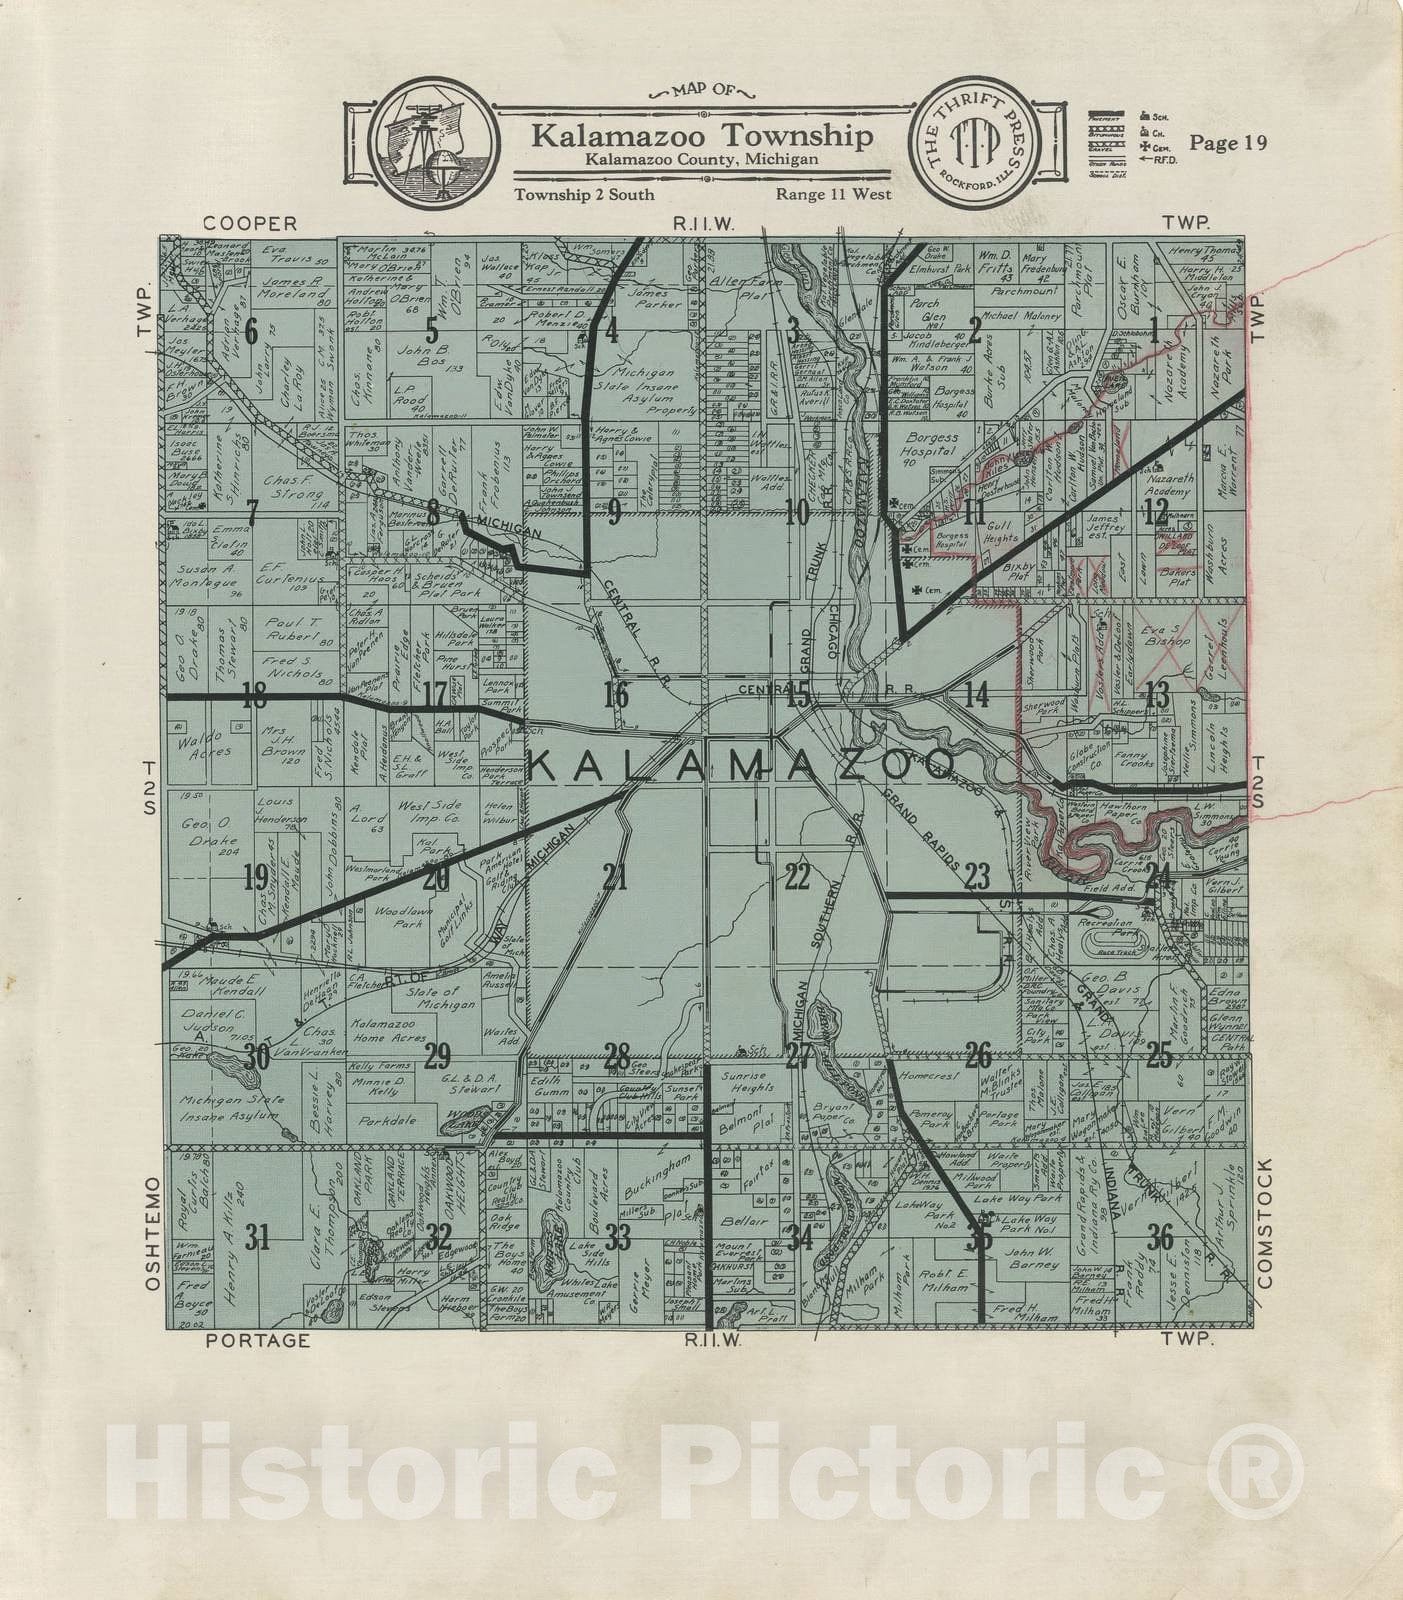 Historic 1928 Map - Plat Book of Kalamazoo County, Michigan - Map of Kalamazoo Township - Atlas and plat Book, Kalamazoo County, Michigan